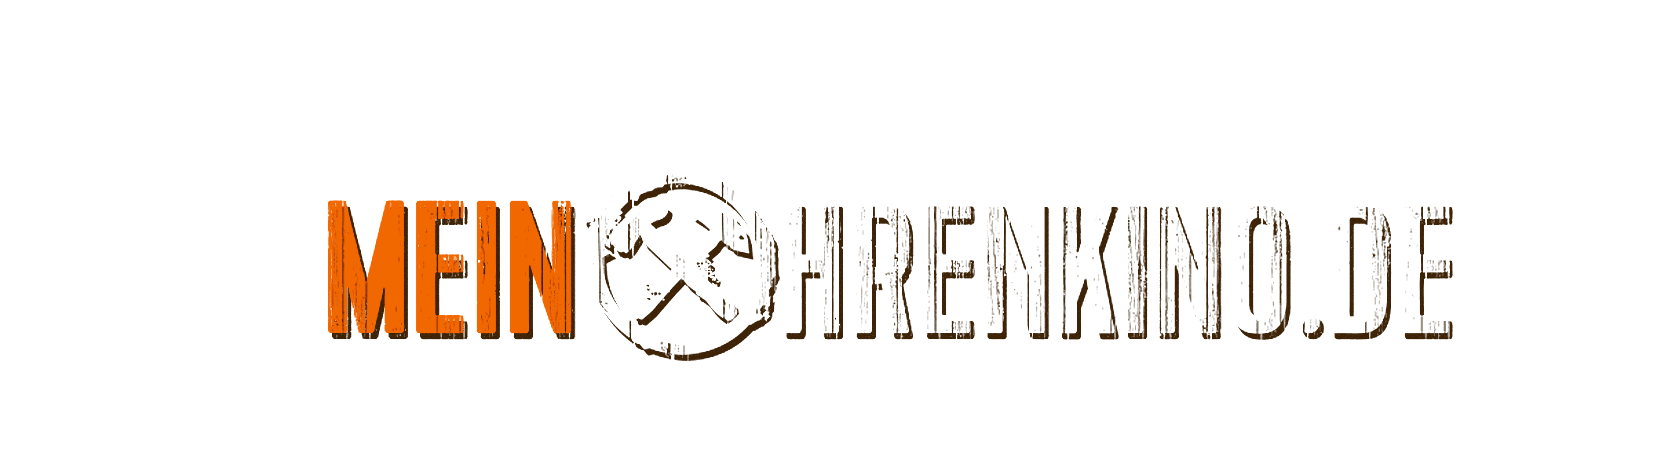 MeinOhrenkino Logo